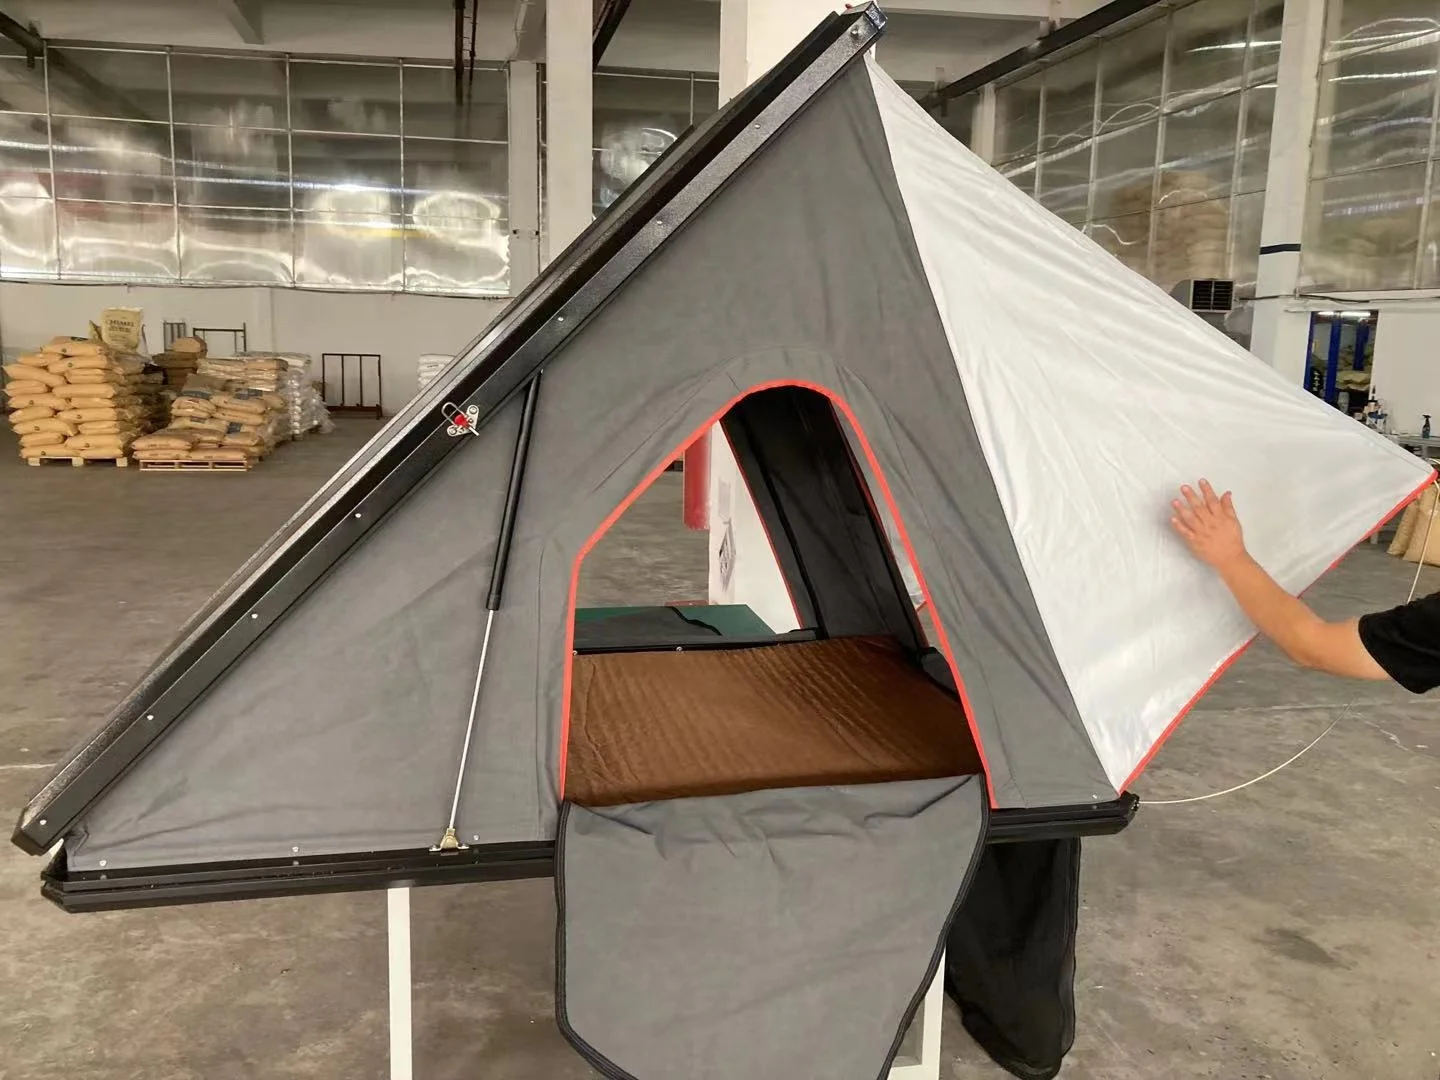 2022 Новое Поступление Tente de toit 4x4 Изготовленный на Заказ Треугольник Из Алюминиевого Сплава Кемпинг daktent Внедорожник Автомобиль Палатка На крыше твердая оболочка Палатка на крыше